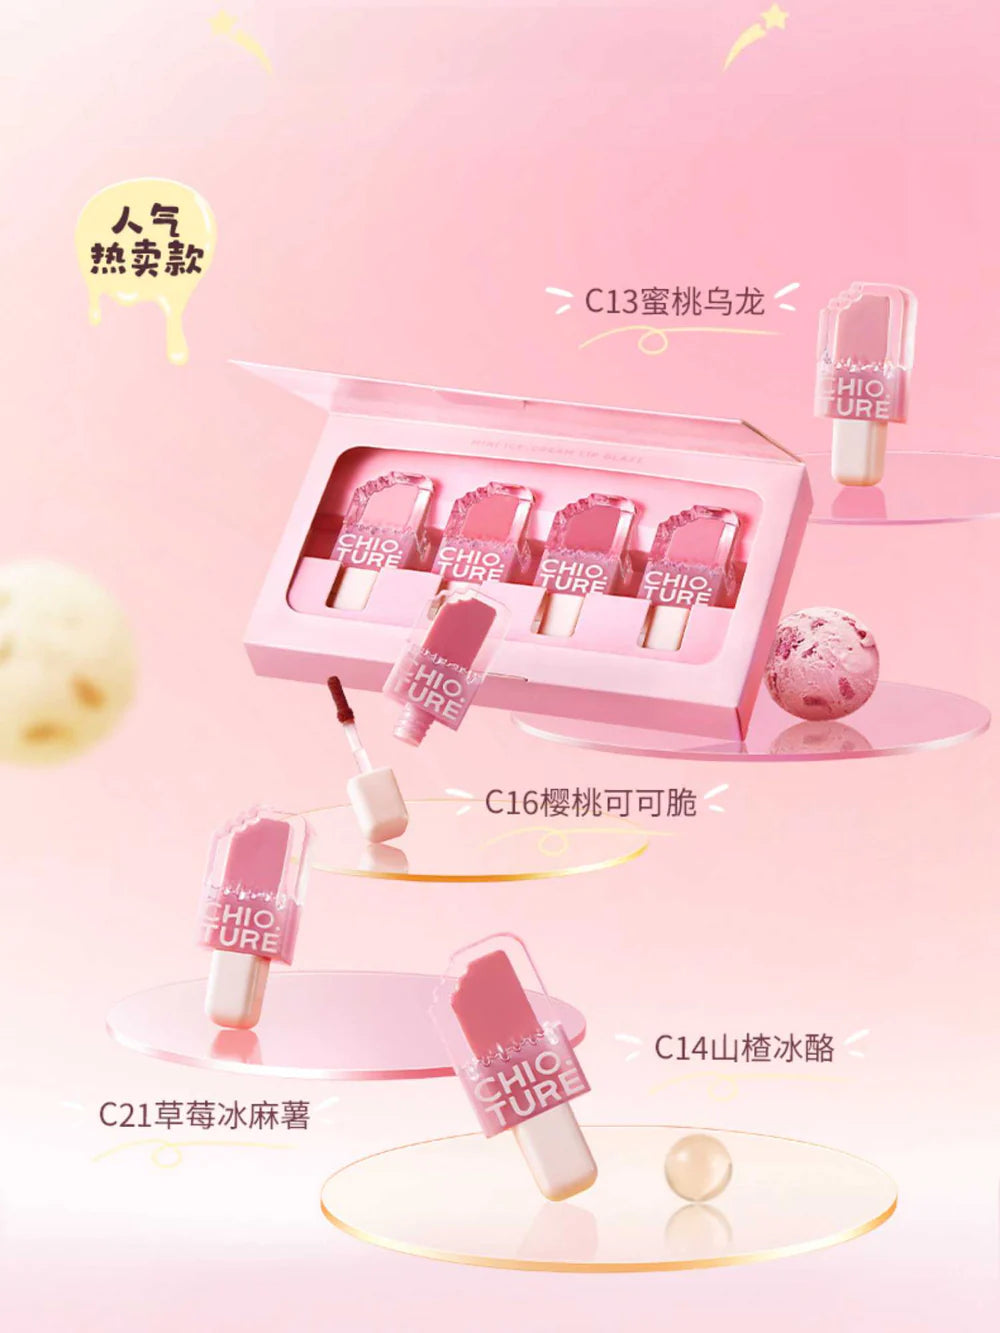 Chioture-Mini-Ice-Cream-Best-Sellers-Set-Image-2